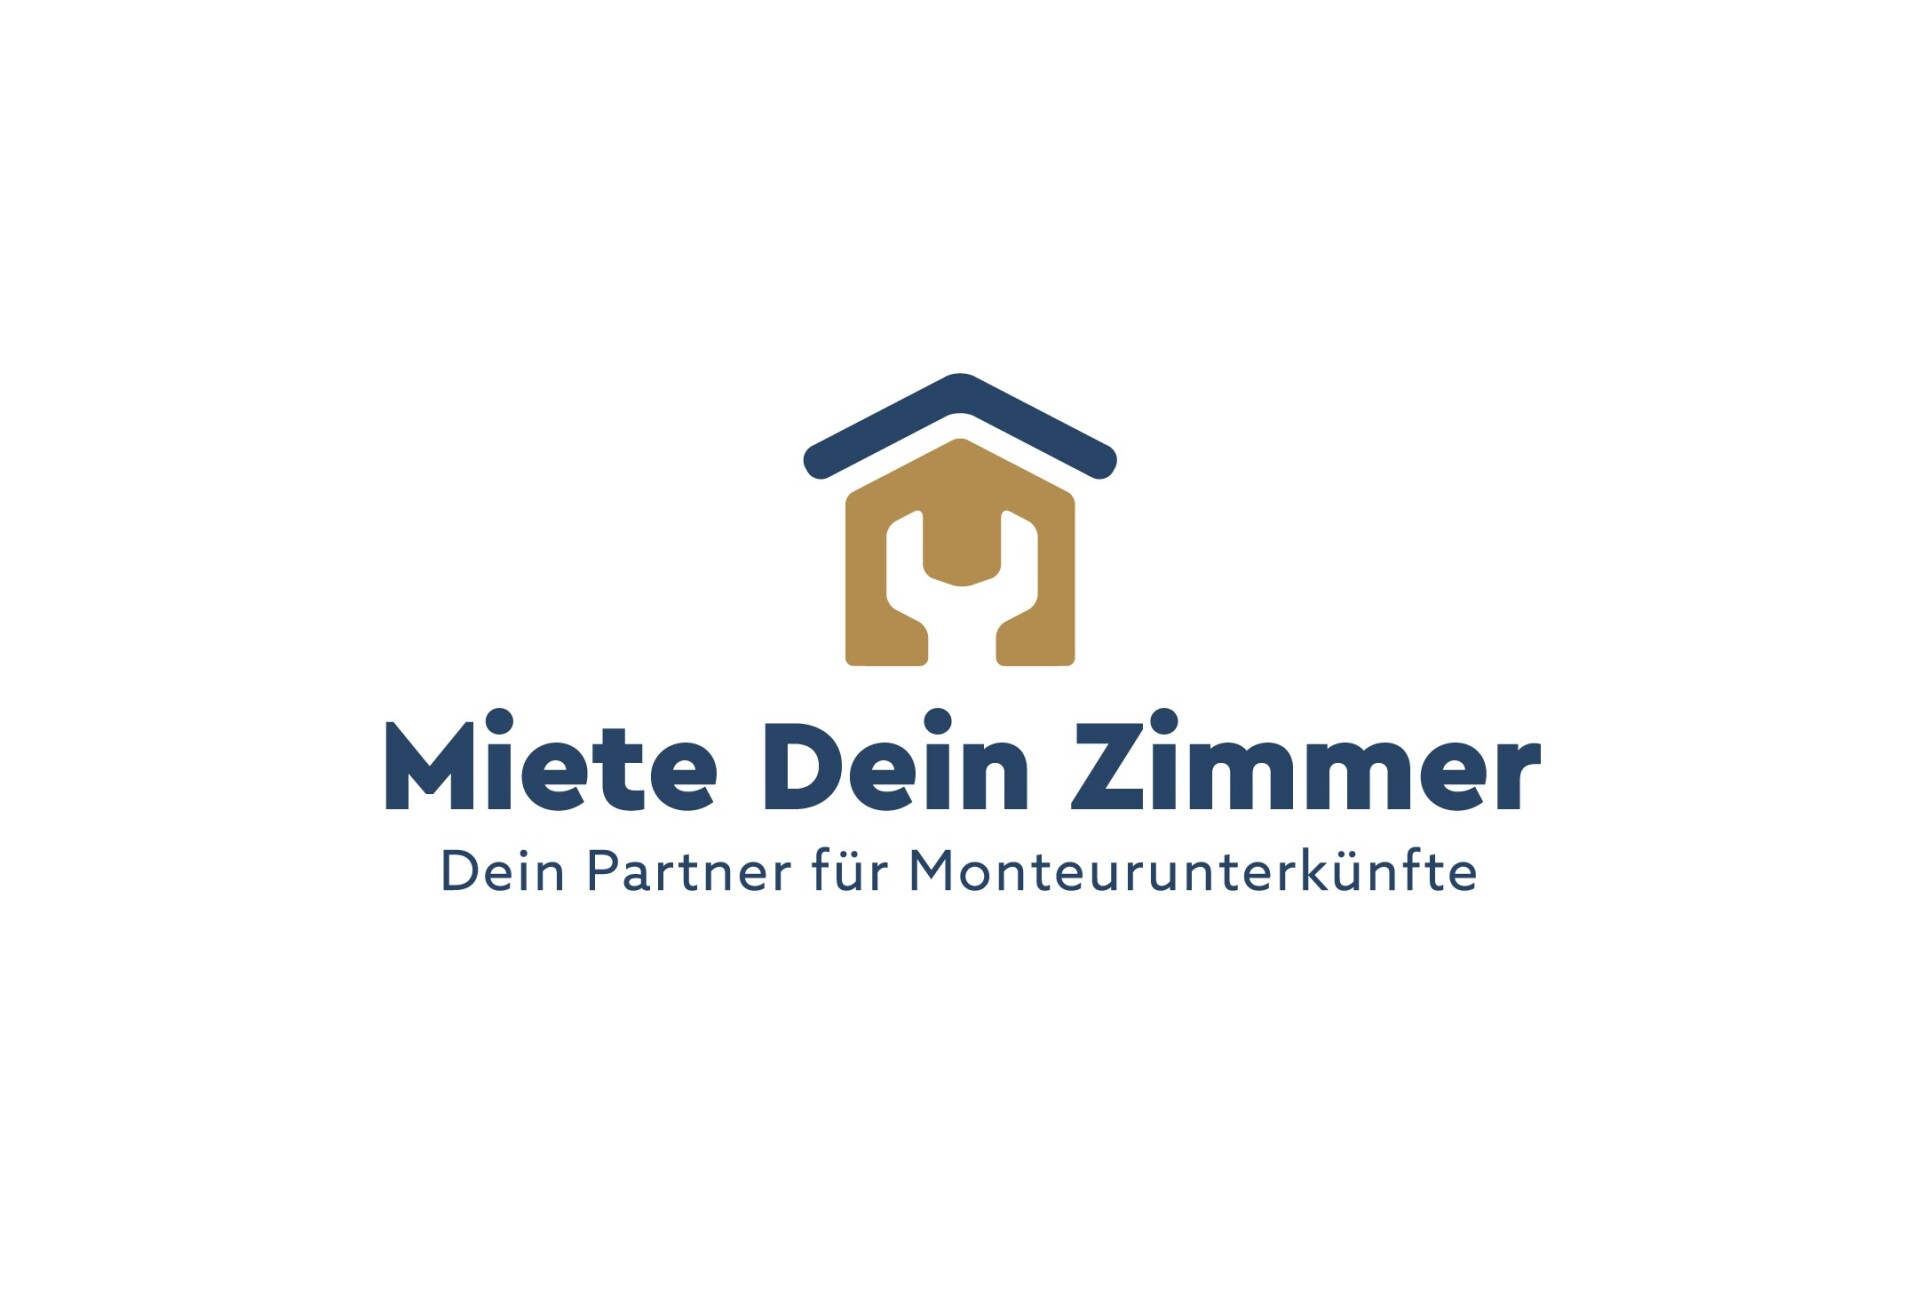 Monteurunterkunft MDZ GmbH bundesweite Vermietung von Unterkünften Frau Ressel 44145 Dortmund 1683721975_645b8ef71e333